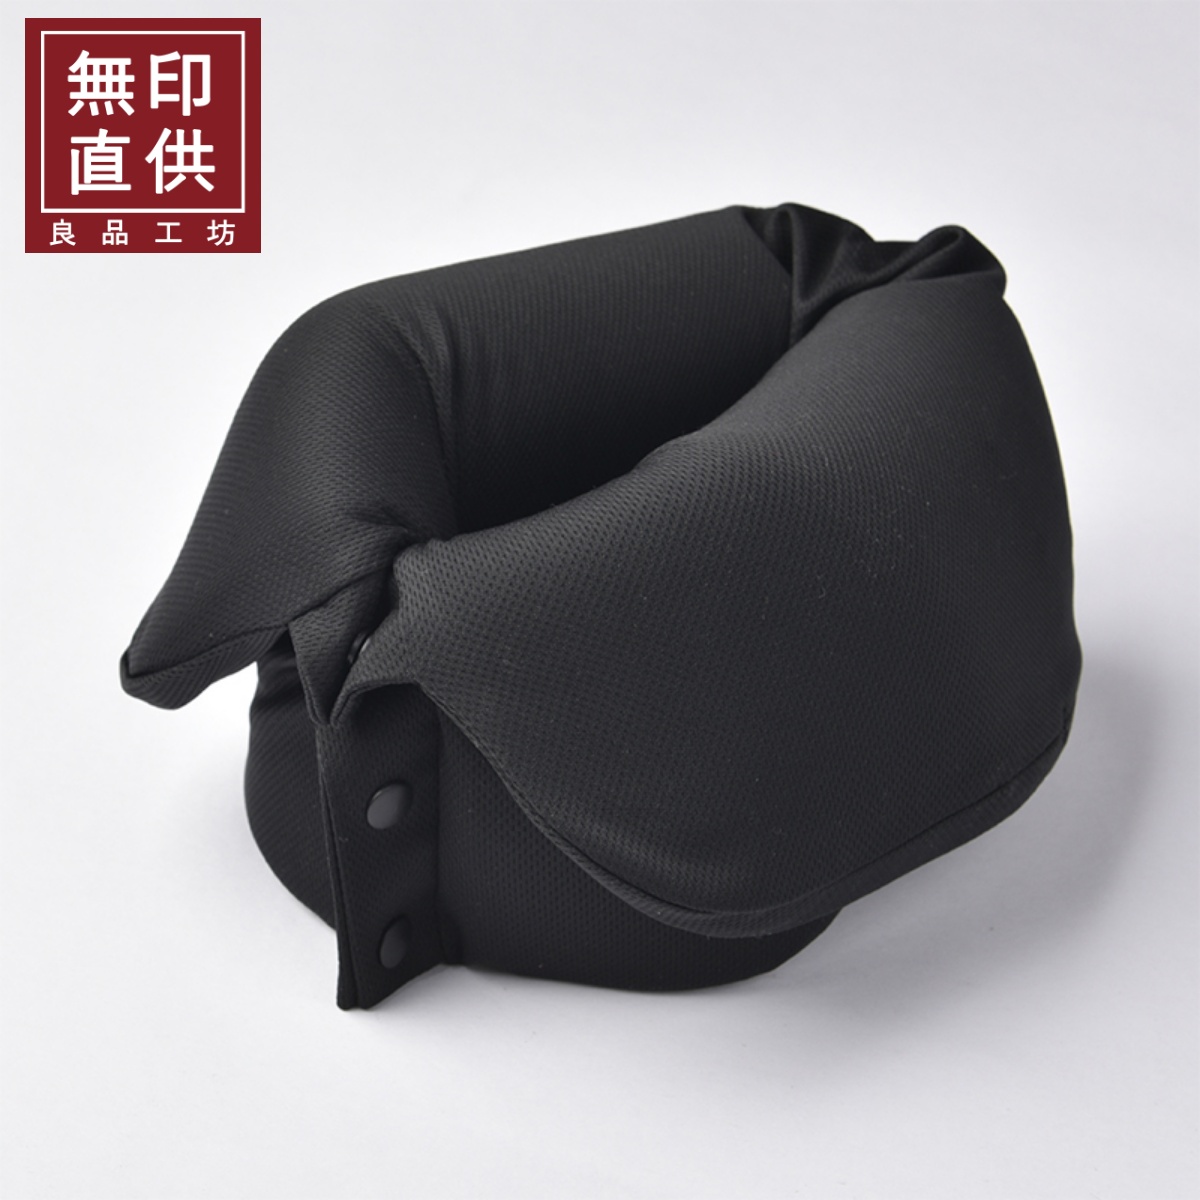 日式良品高質感卷疊u型枕頭舒適透氣旅行必備好夥伴